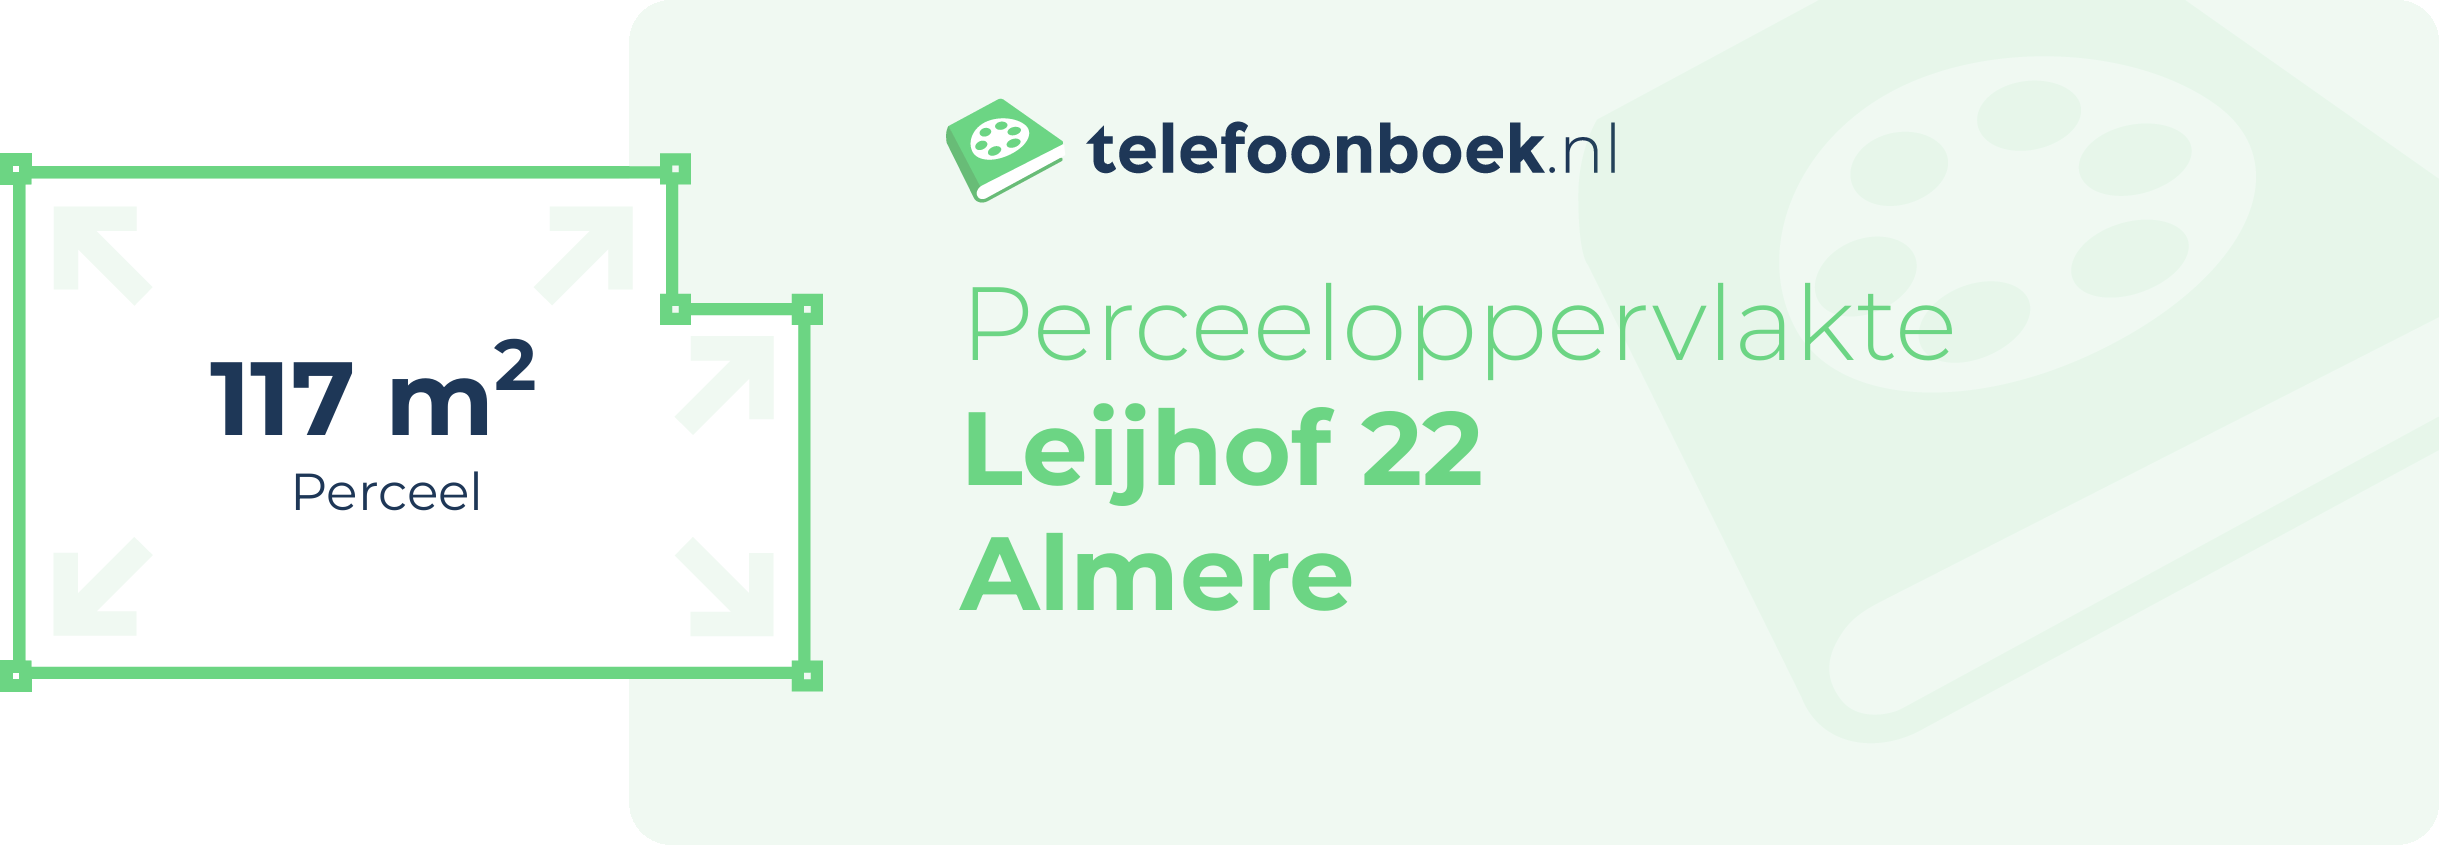 Perceeloppervlakte Leijhof 22 Almere